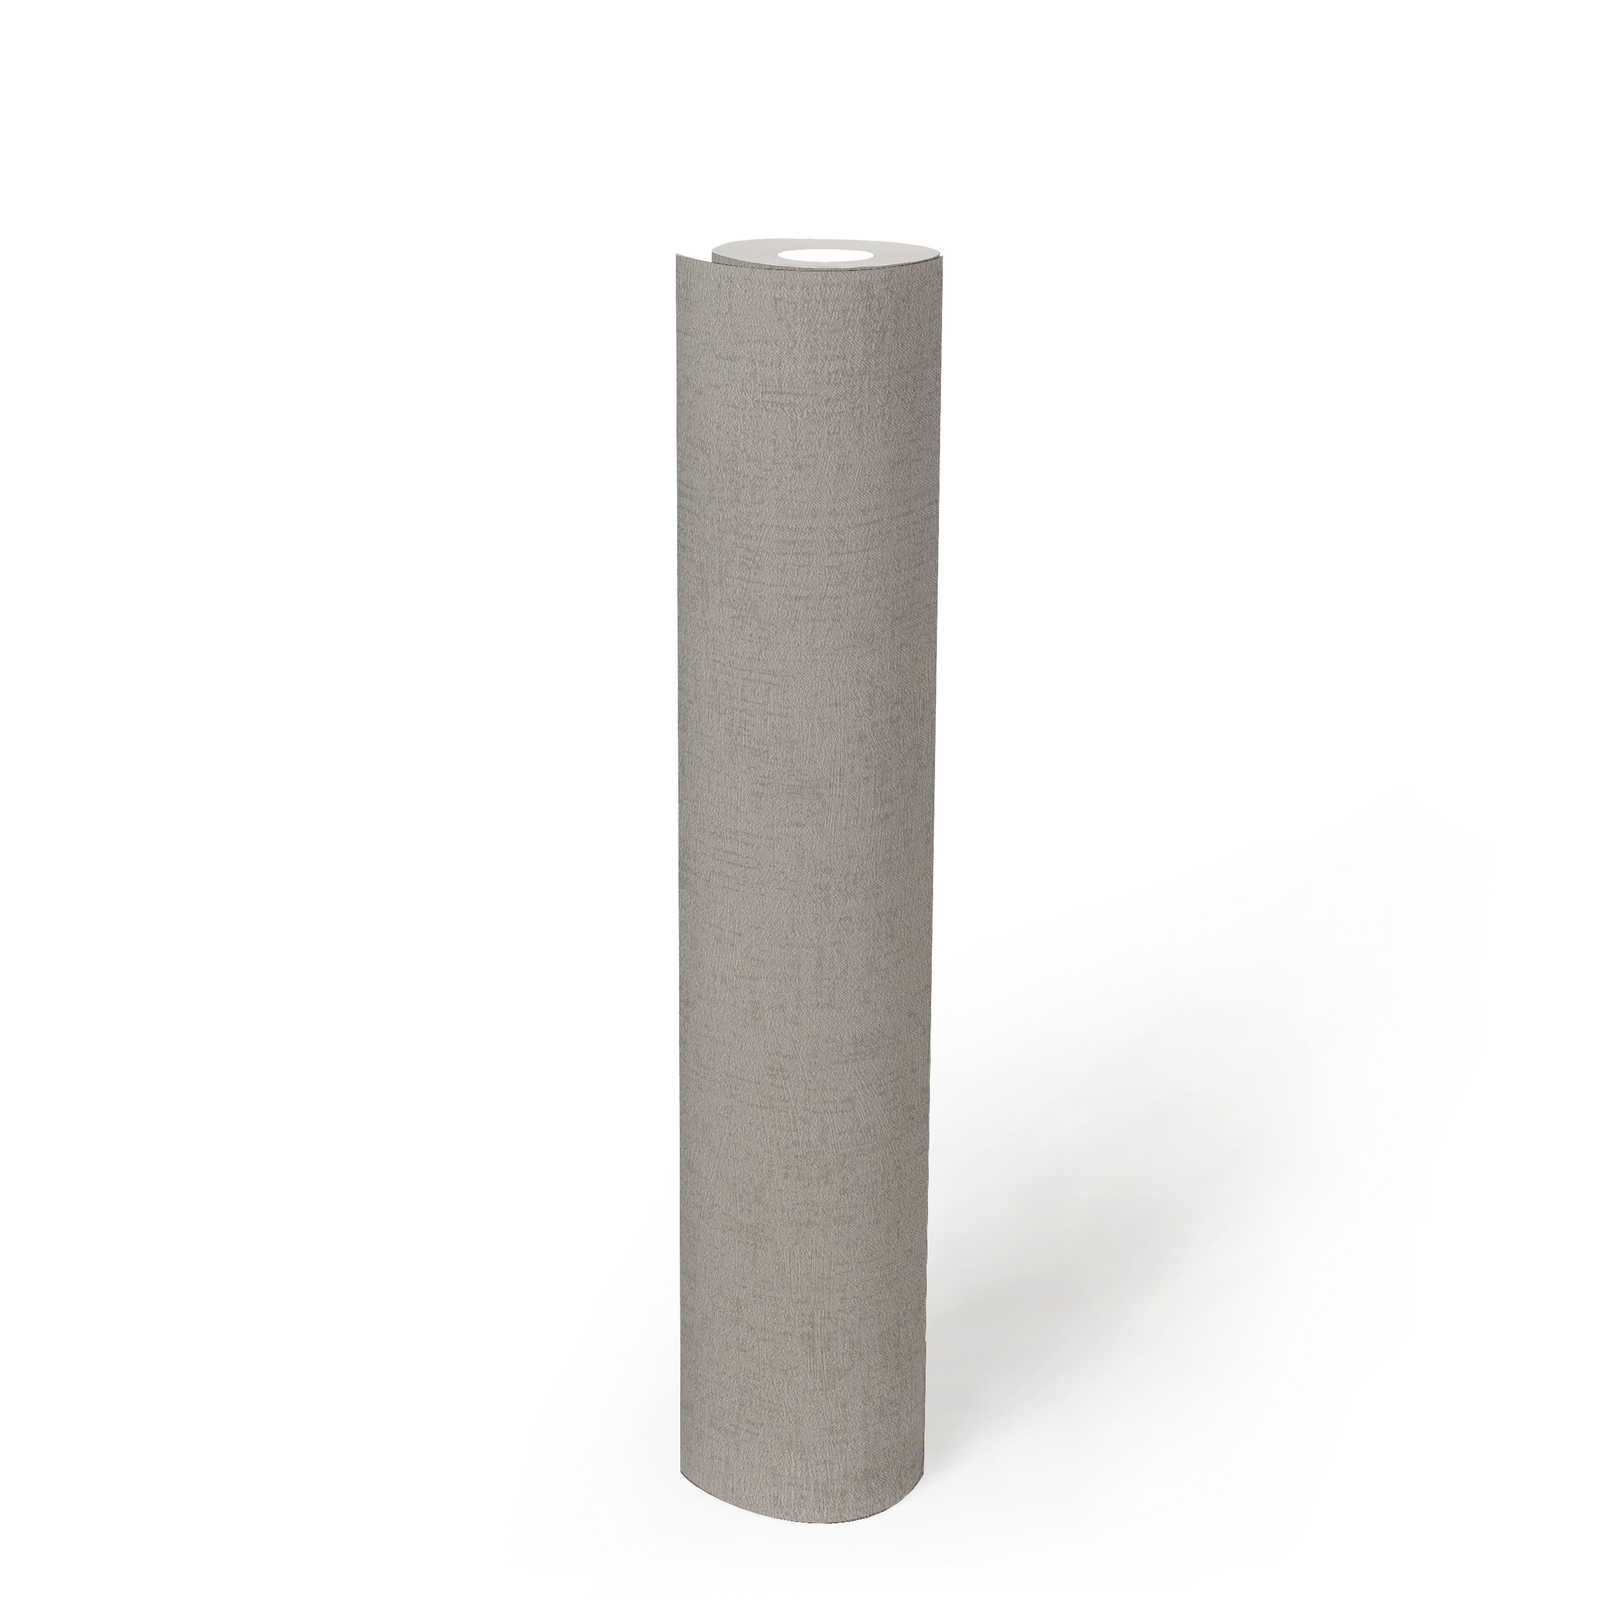             Glänzende Vliestapeten Greige mit Strukturdesign – Grau, Metallic
        